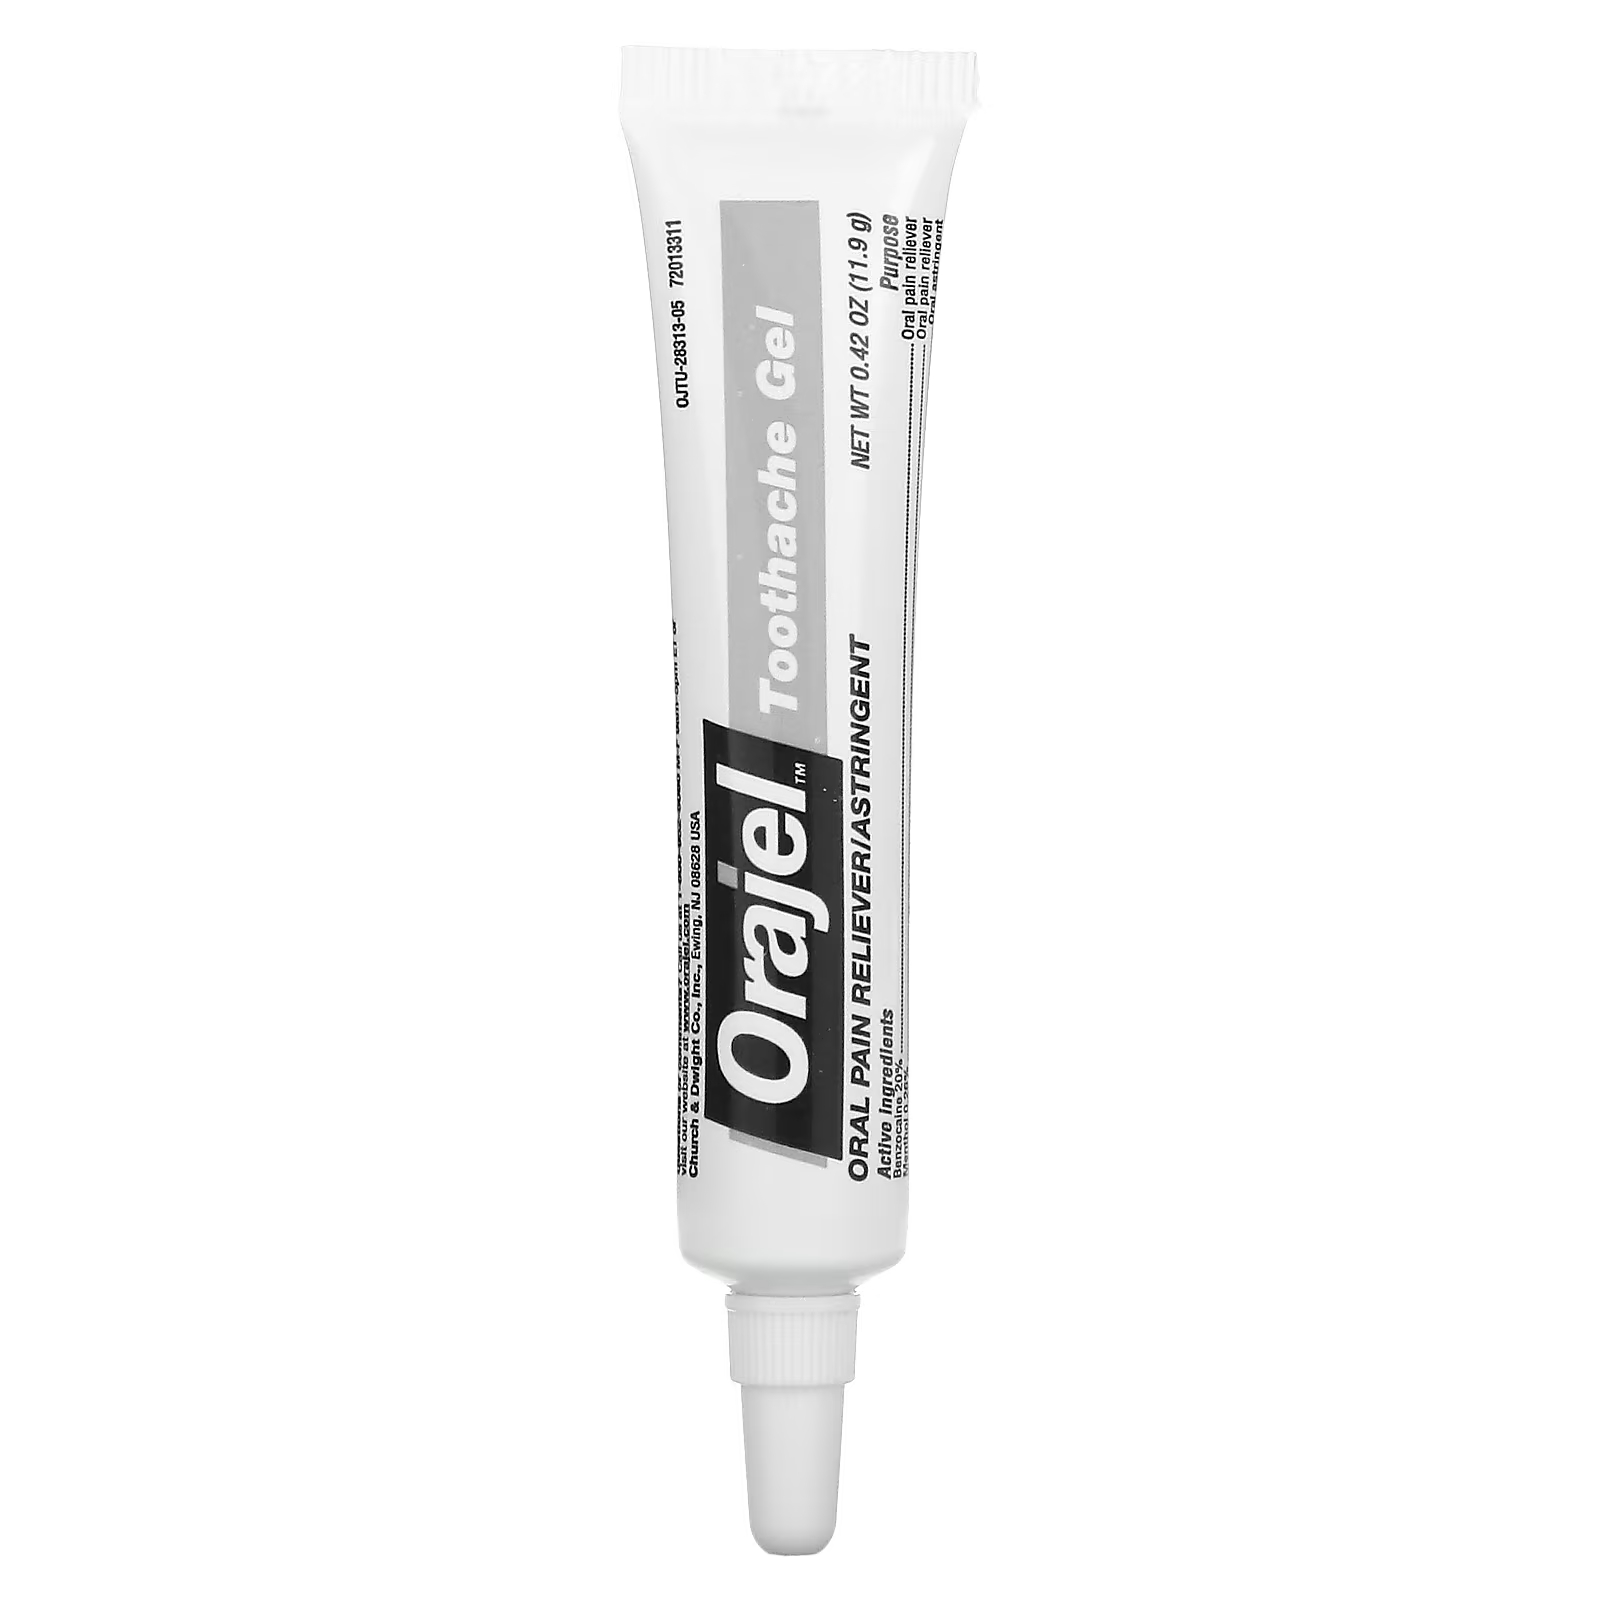 Гель обезболивающий Orajel 3x для лечения зубной боли и десен orajel мгновенный обезболивающий гель 4 кратное лекарство от зубной боли и десен 7 г 0 25 унции